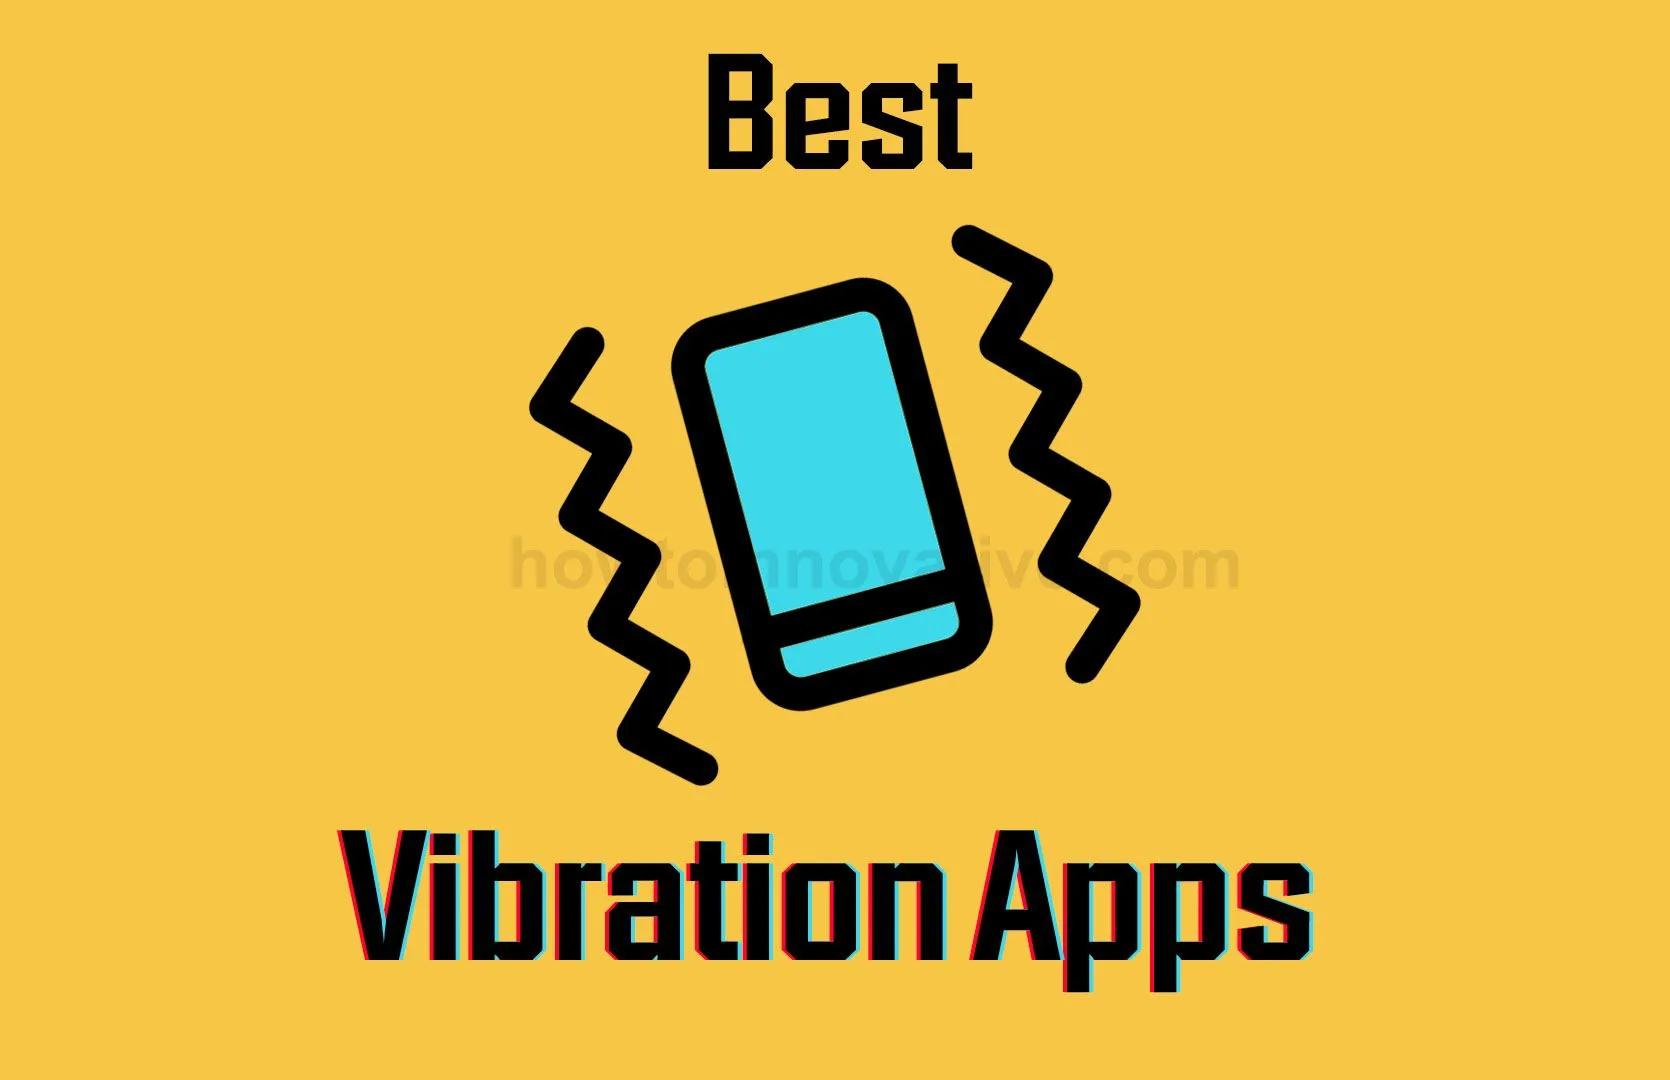 best vibration apps